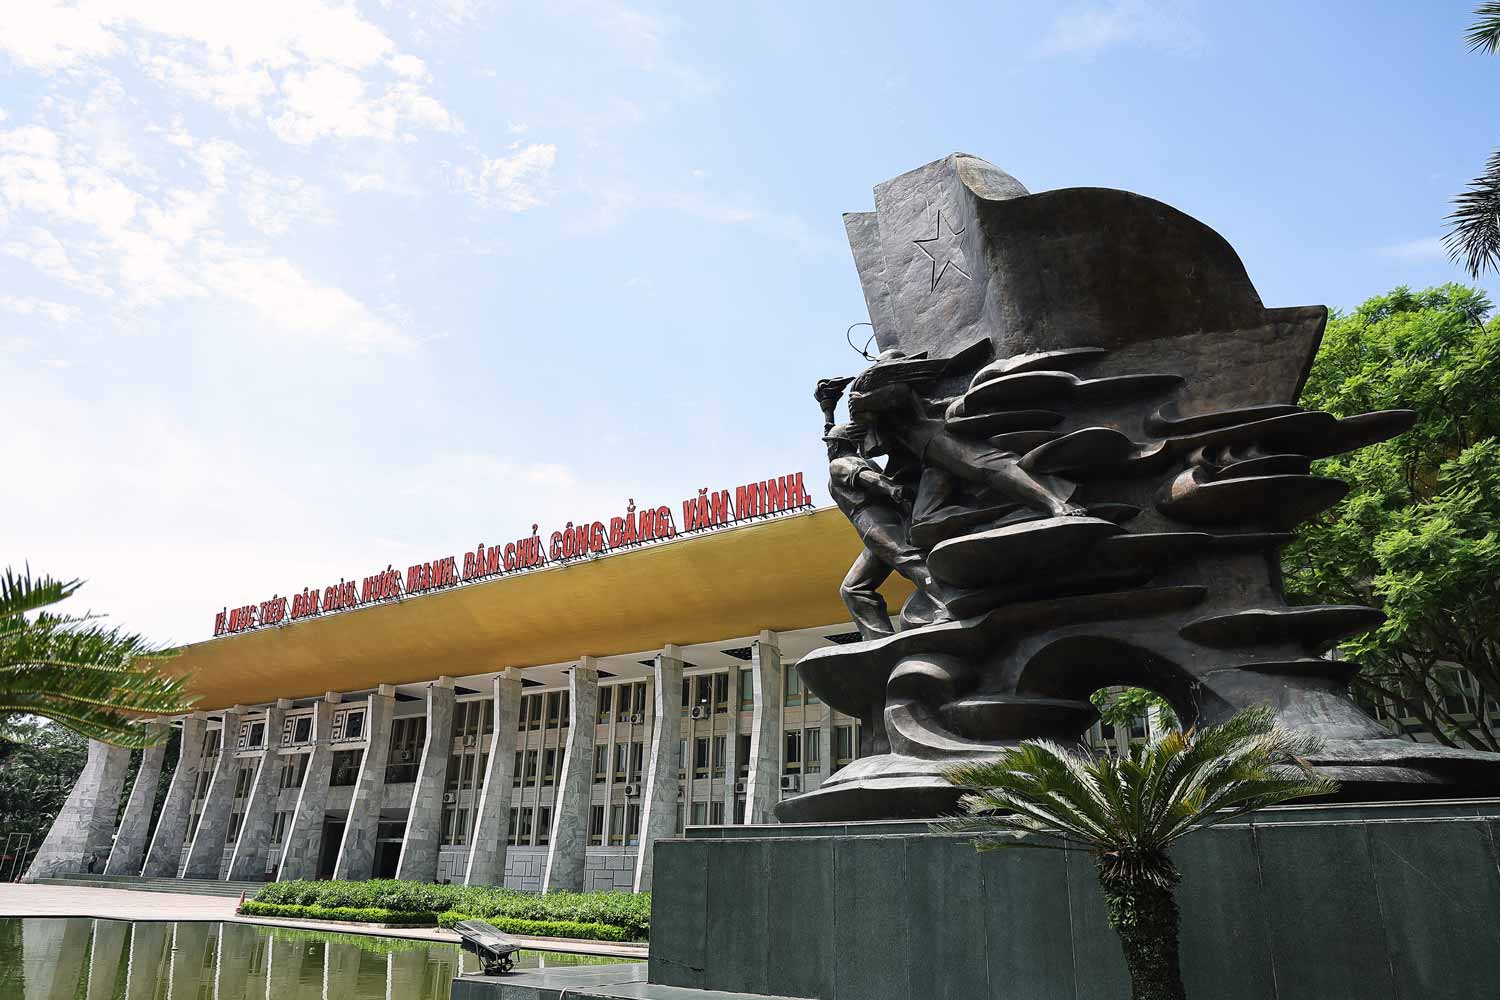 Cung Văn hoá Lao động Hữu nghị Việt Xô (Hà Nội) nằm tại ngã ba đường Trần Hưng Đạo – Quán Sứ, là quà tặng của Hội đồng Trung ương các công đoàn Liên xô (cũ) tặng cho giai cấp nhân và tổ chức Công đoàn Việt Nam. Công trình được khởi công năm 1978 và hoàn thành vào ngày 1.9.1985.